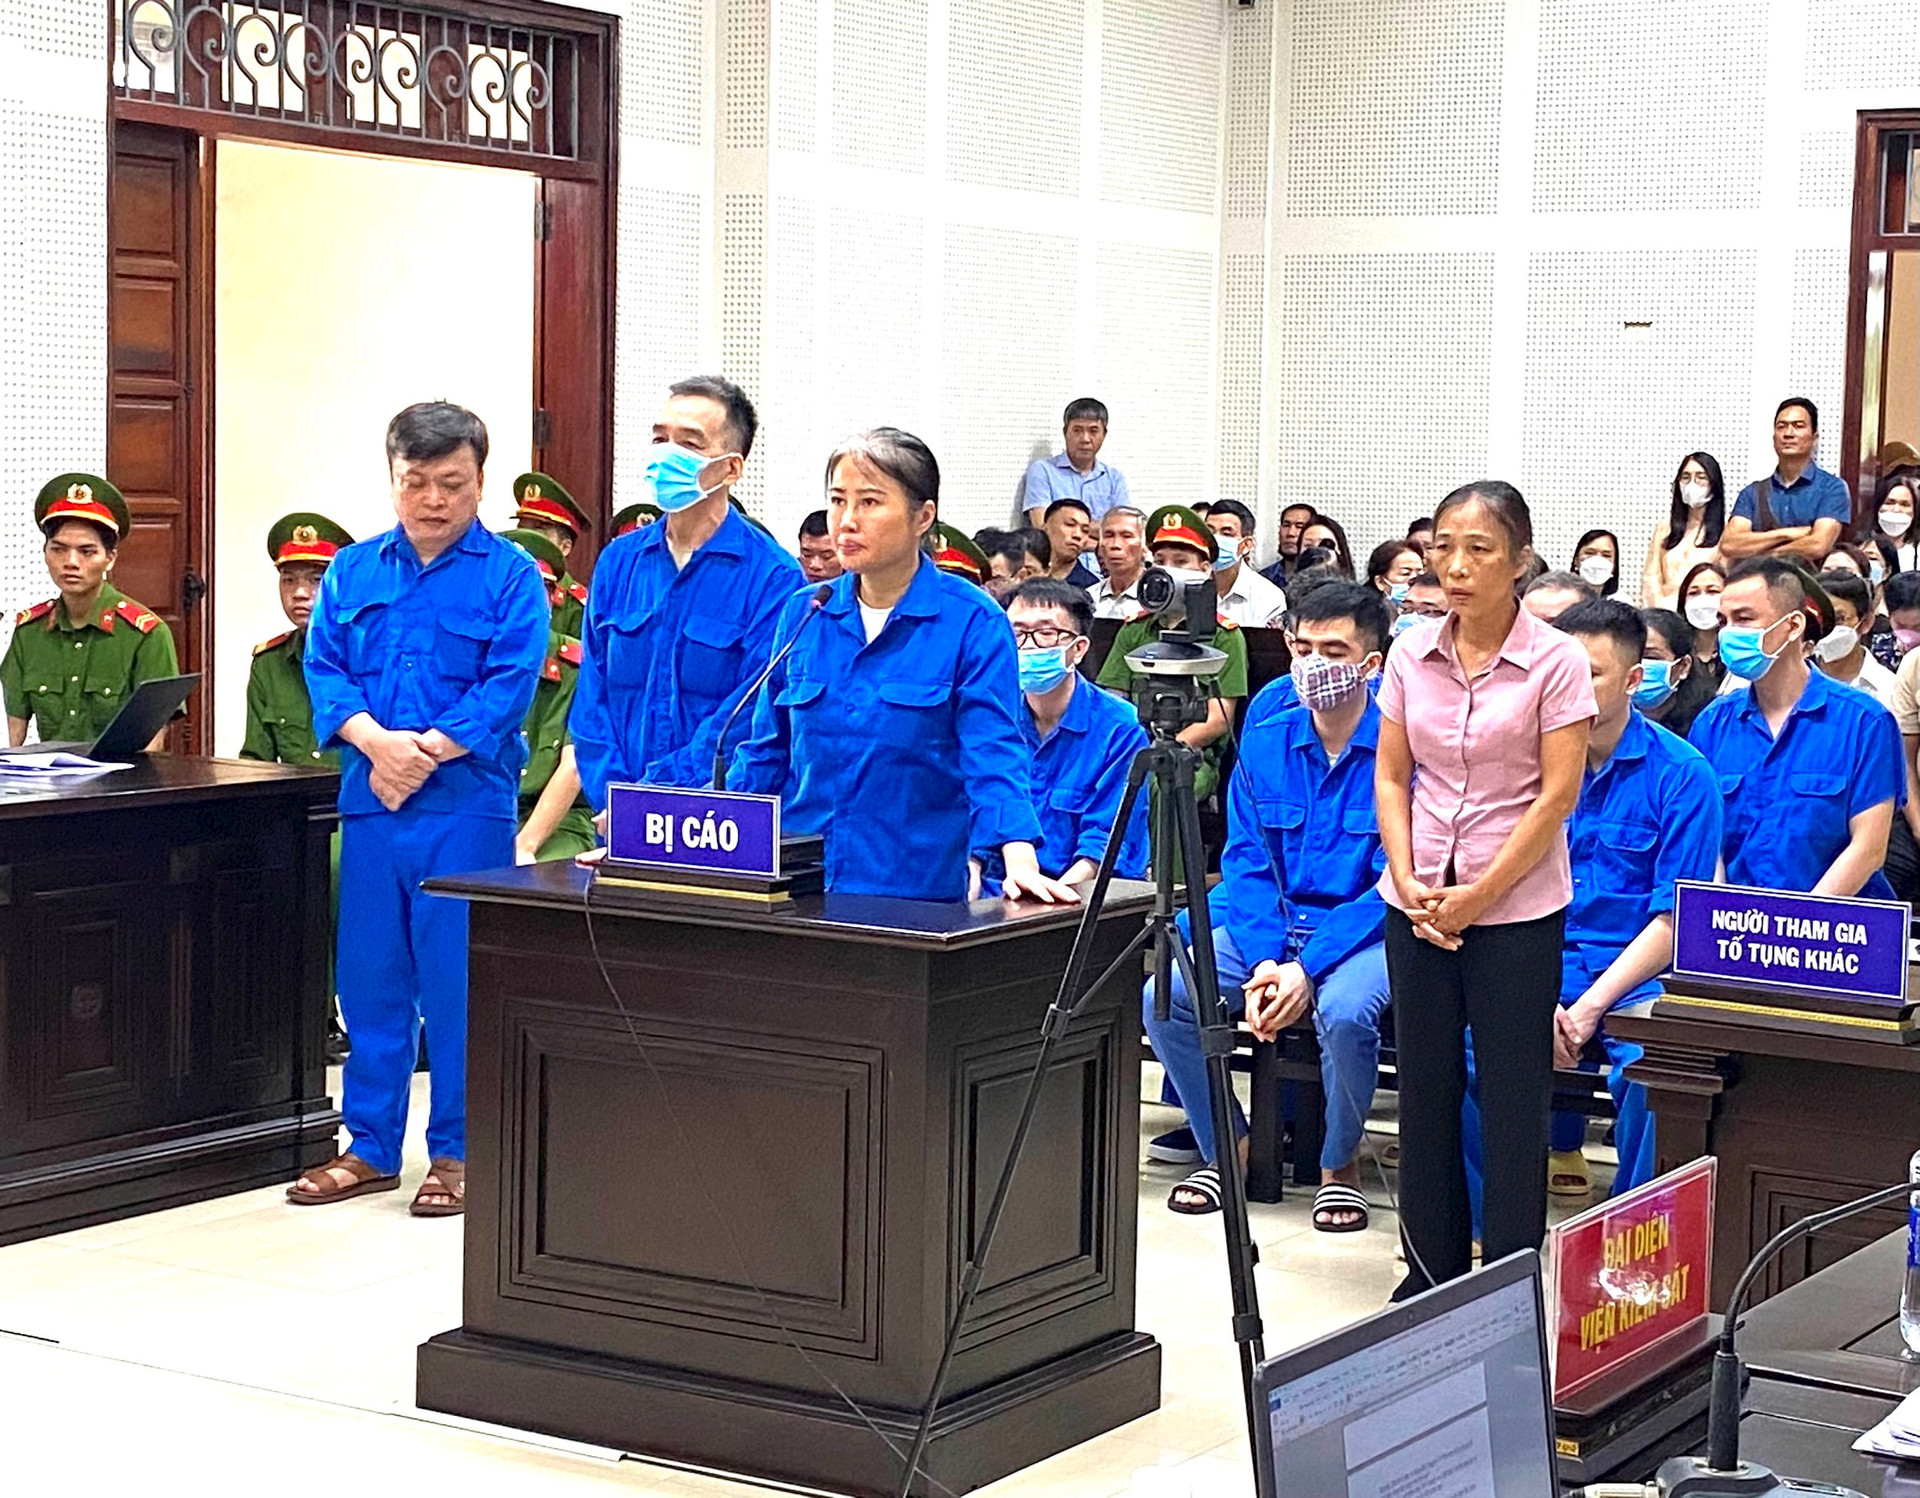 Cựu Giám đốc Sở GD&ĐT tỉnh Quảng Ninh và đồng bị tuyên phạt bao nhiêu năm tù? - Ảnh 4.